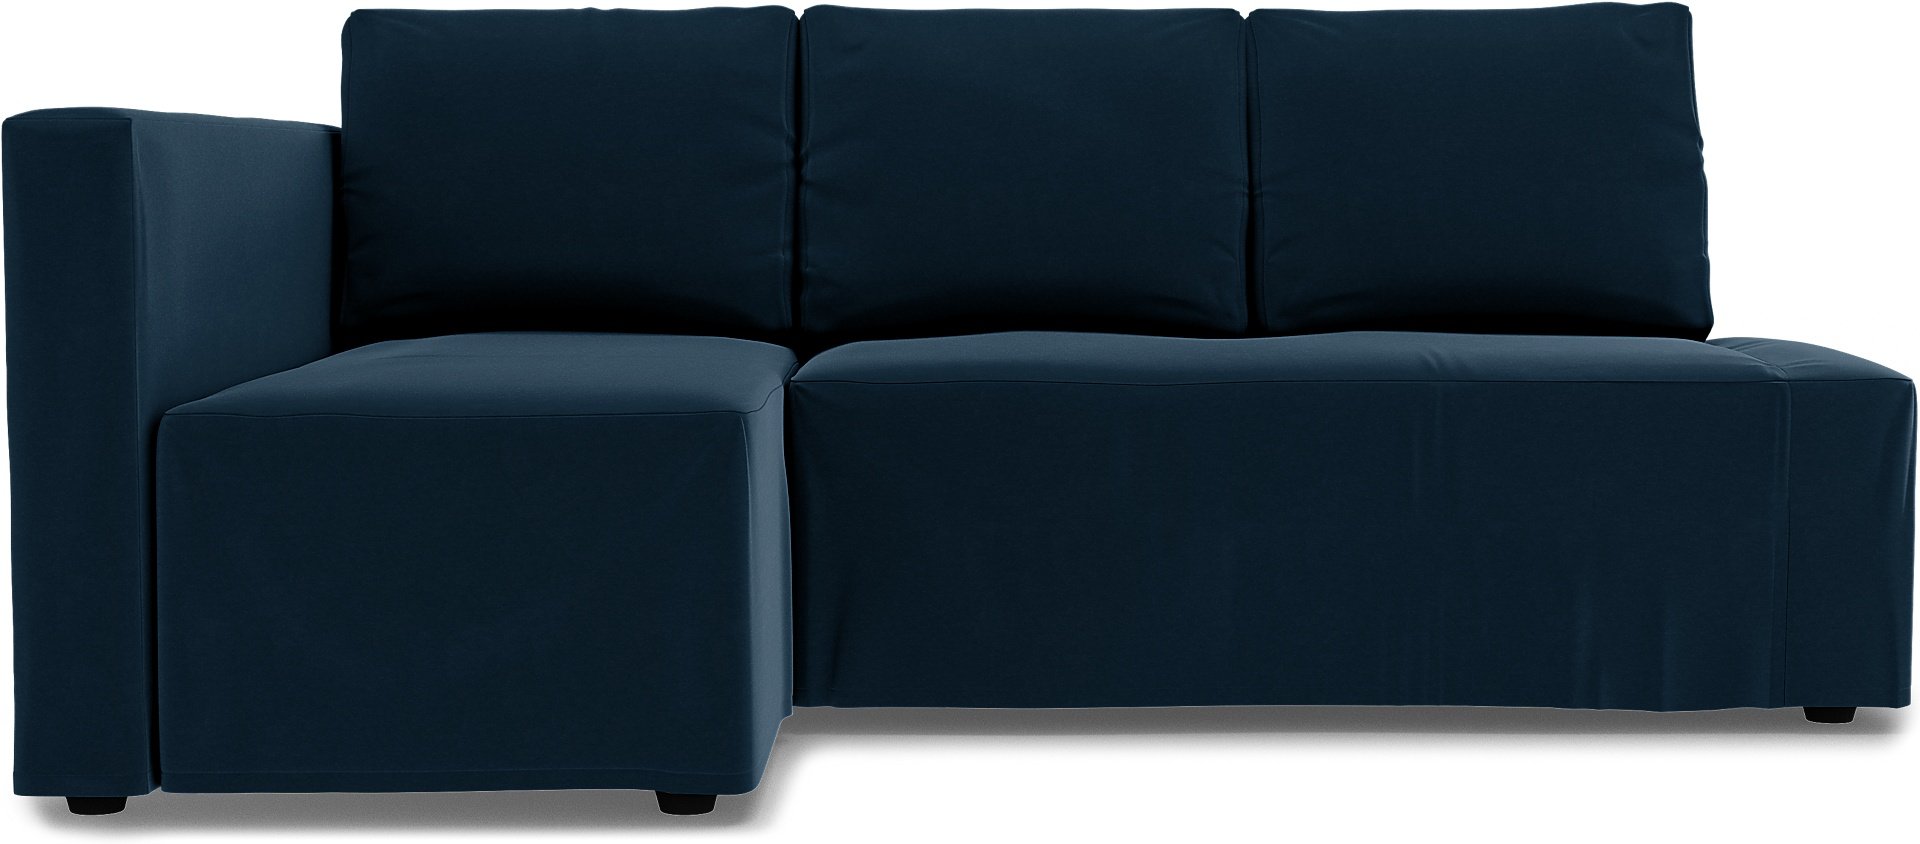 IKEA - Friheten Sofa Bed with Left Chaise Cover, Midnight, Velvet - Bemz